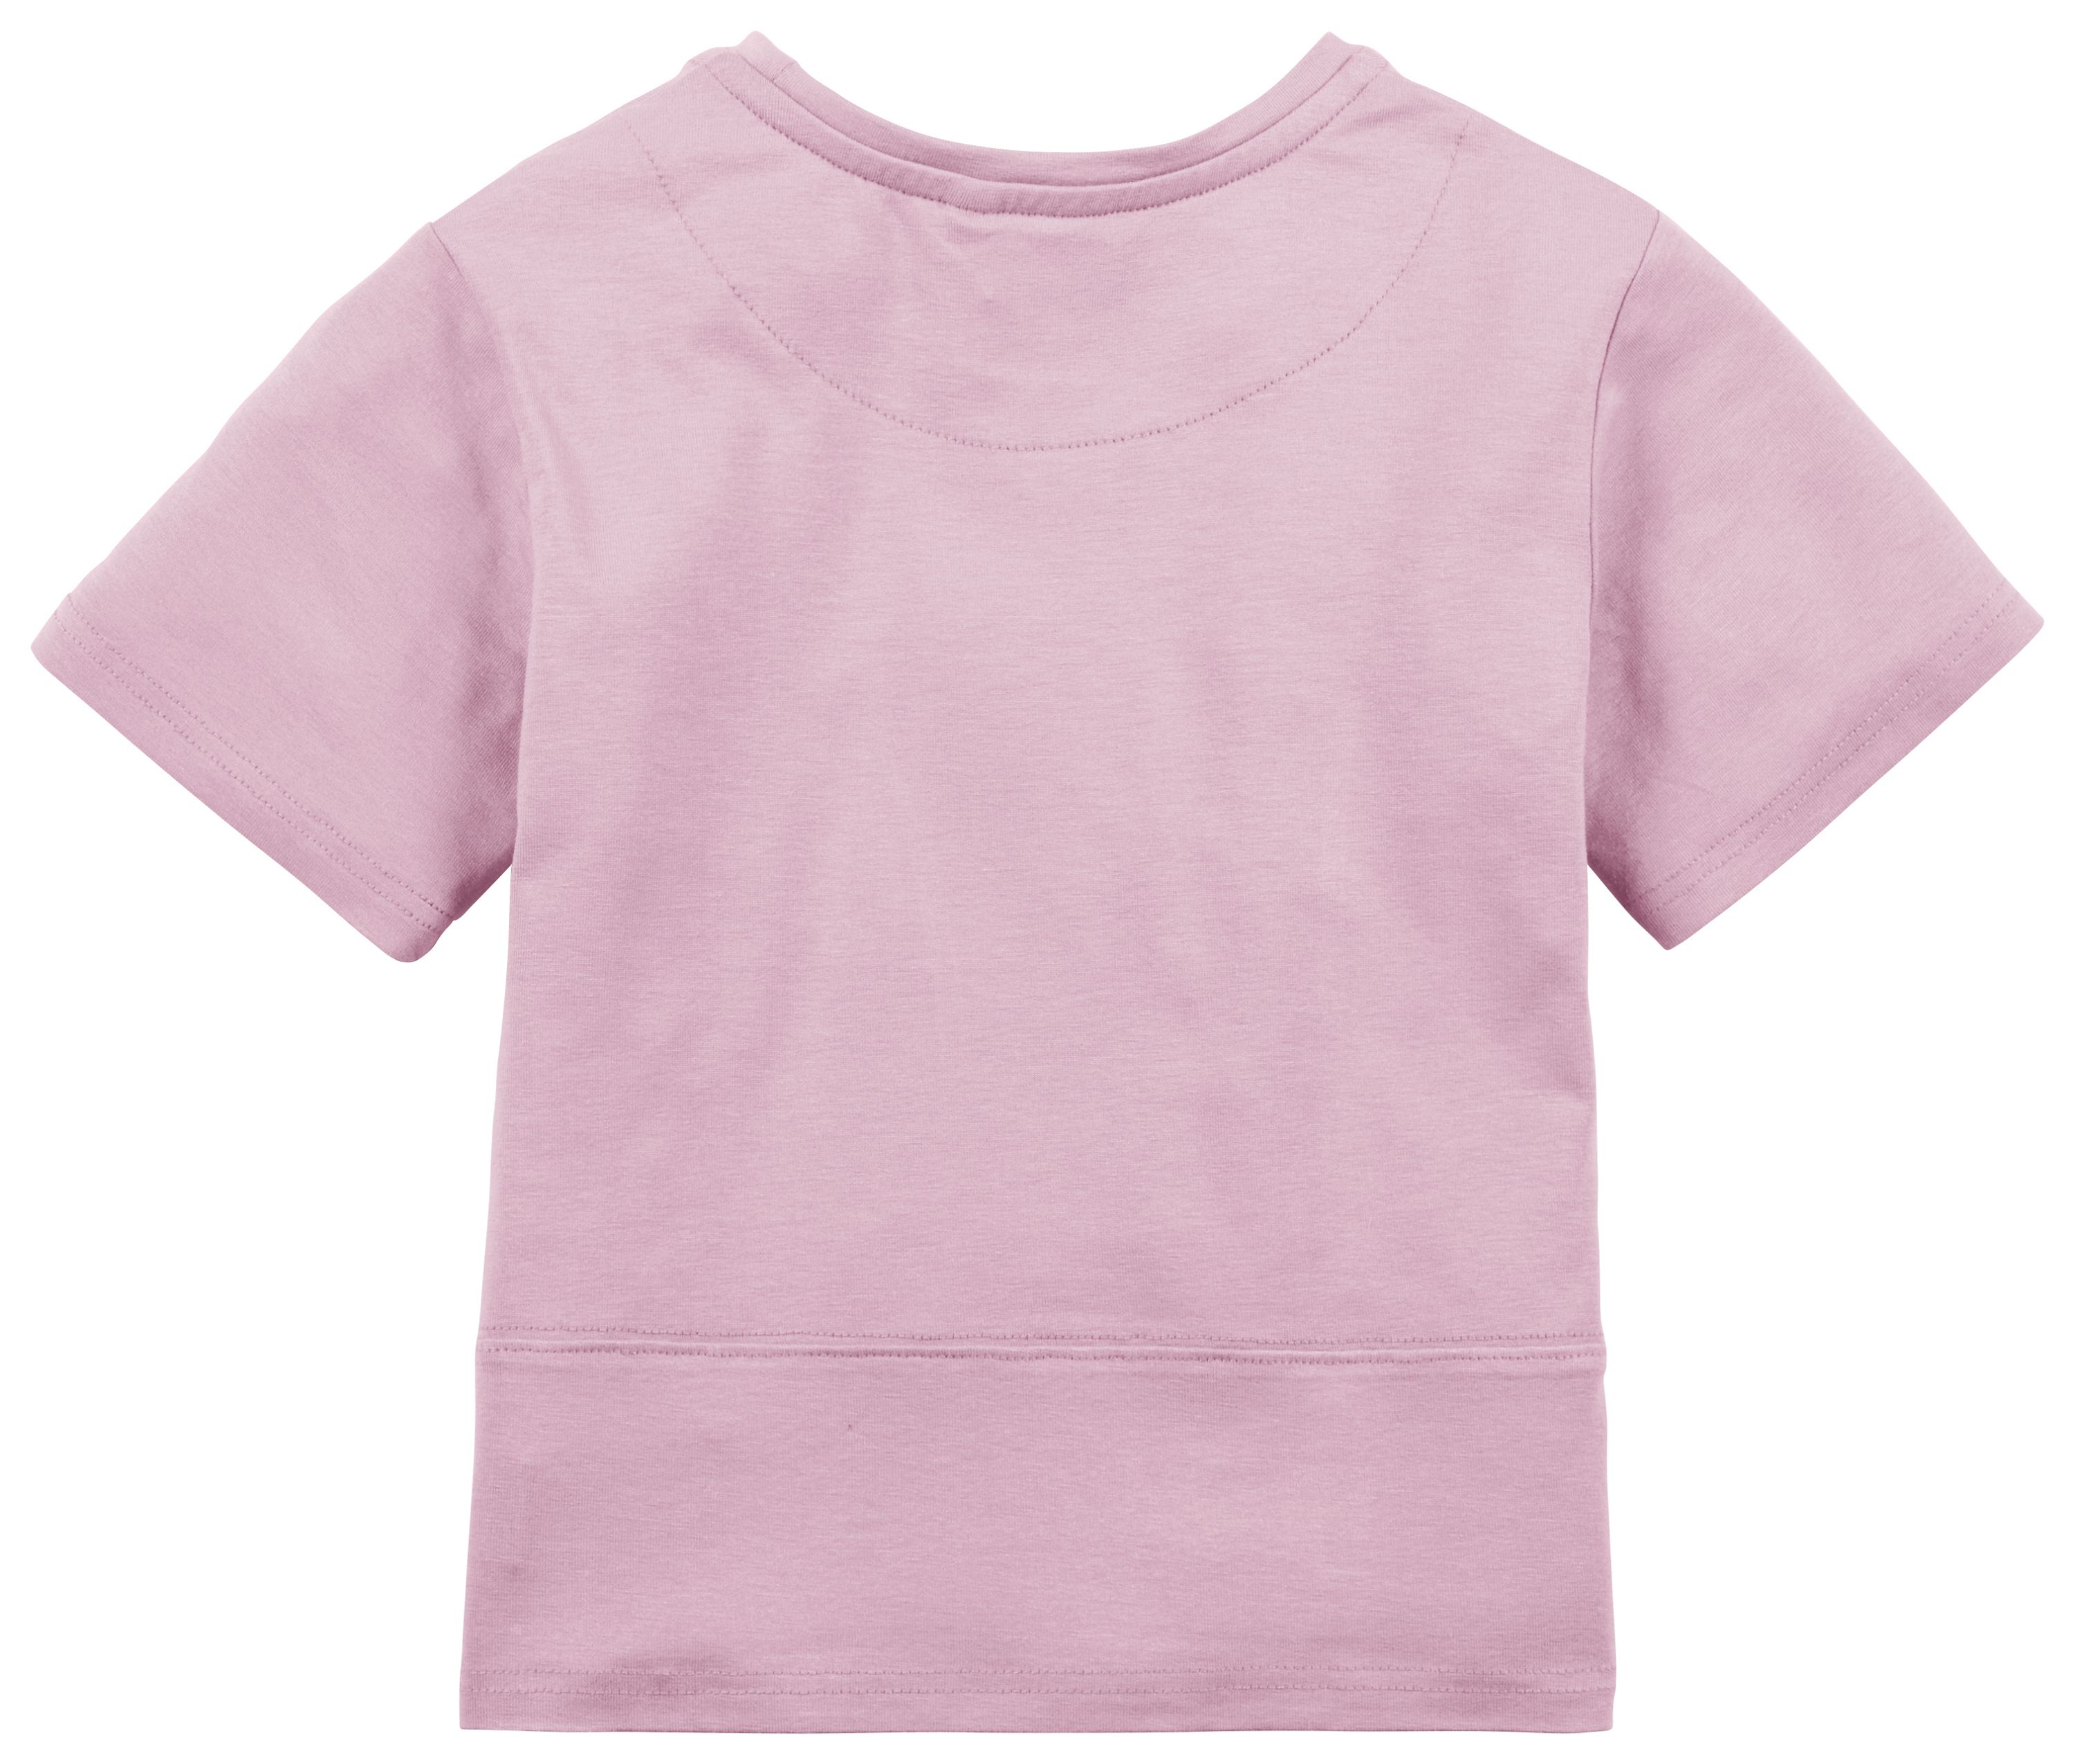 Die Rückseite des rosa Stella-Shirts